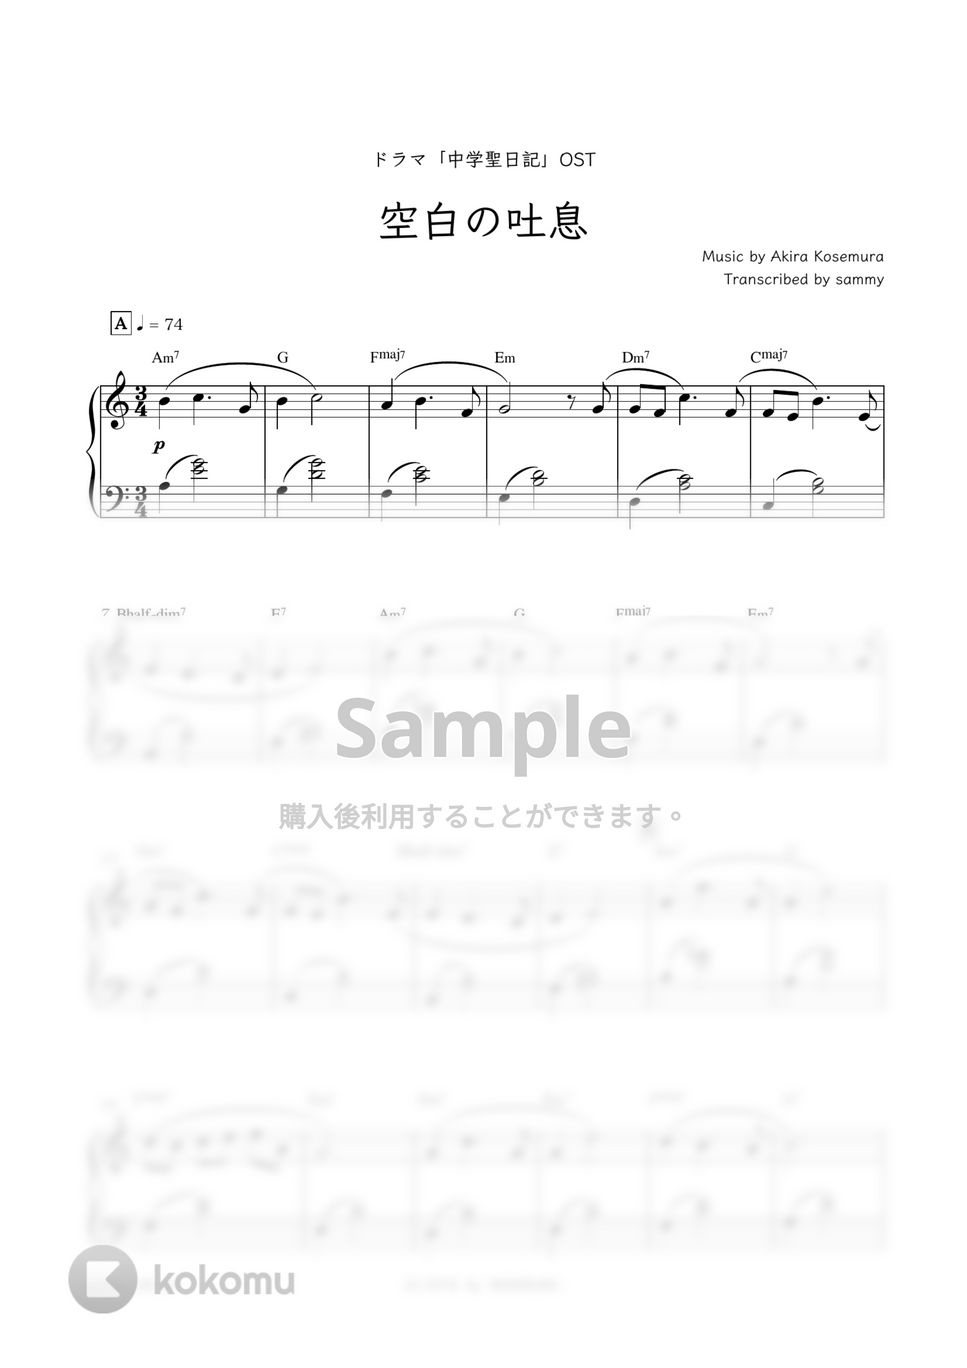 ドラマ『中学聖日記』OST - 空白の吐息 by sammy